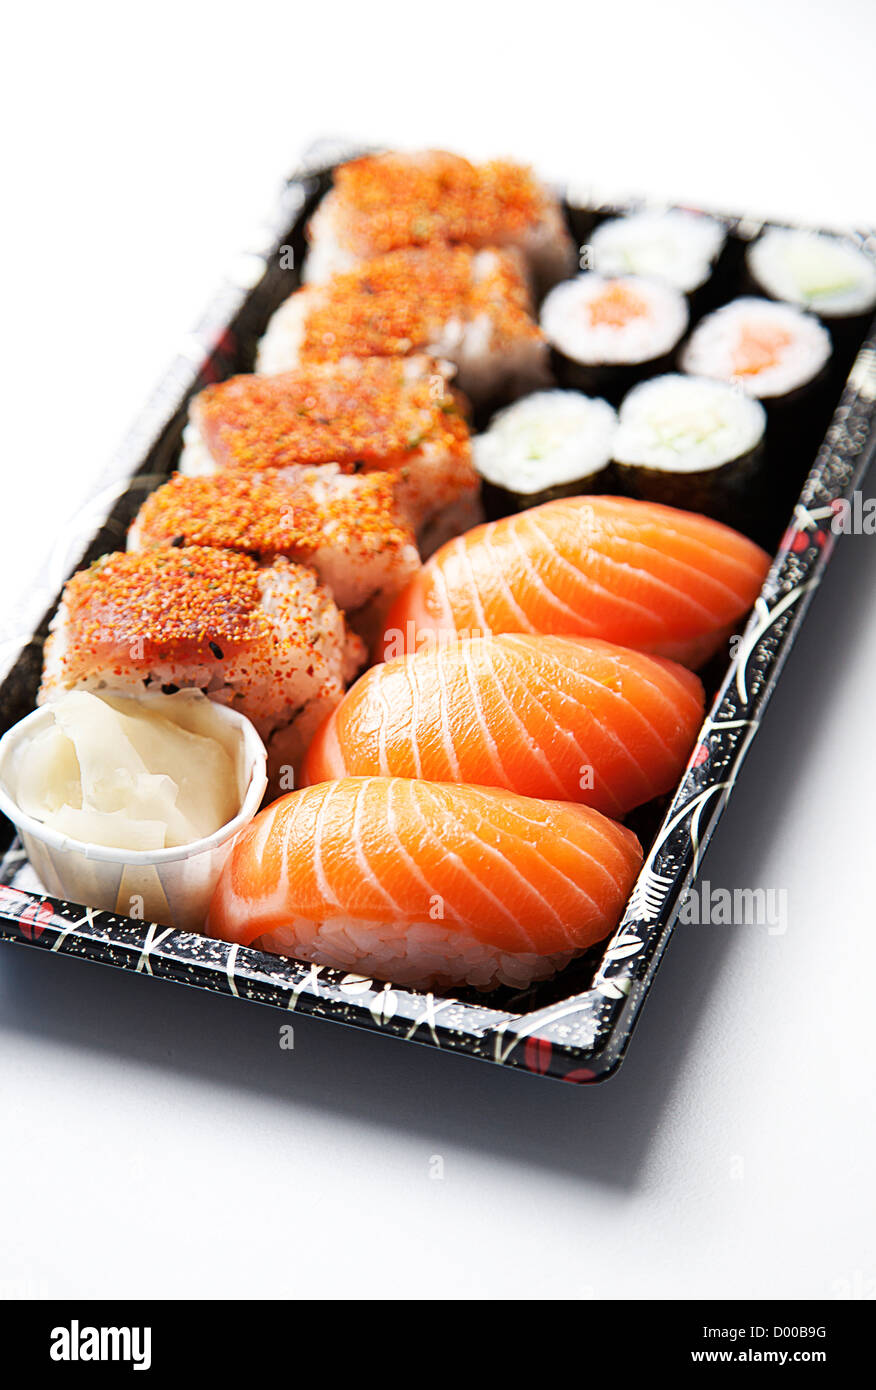 Sushi food on tray against white background Stock Photo